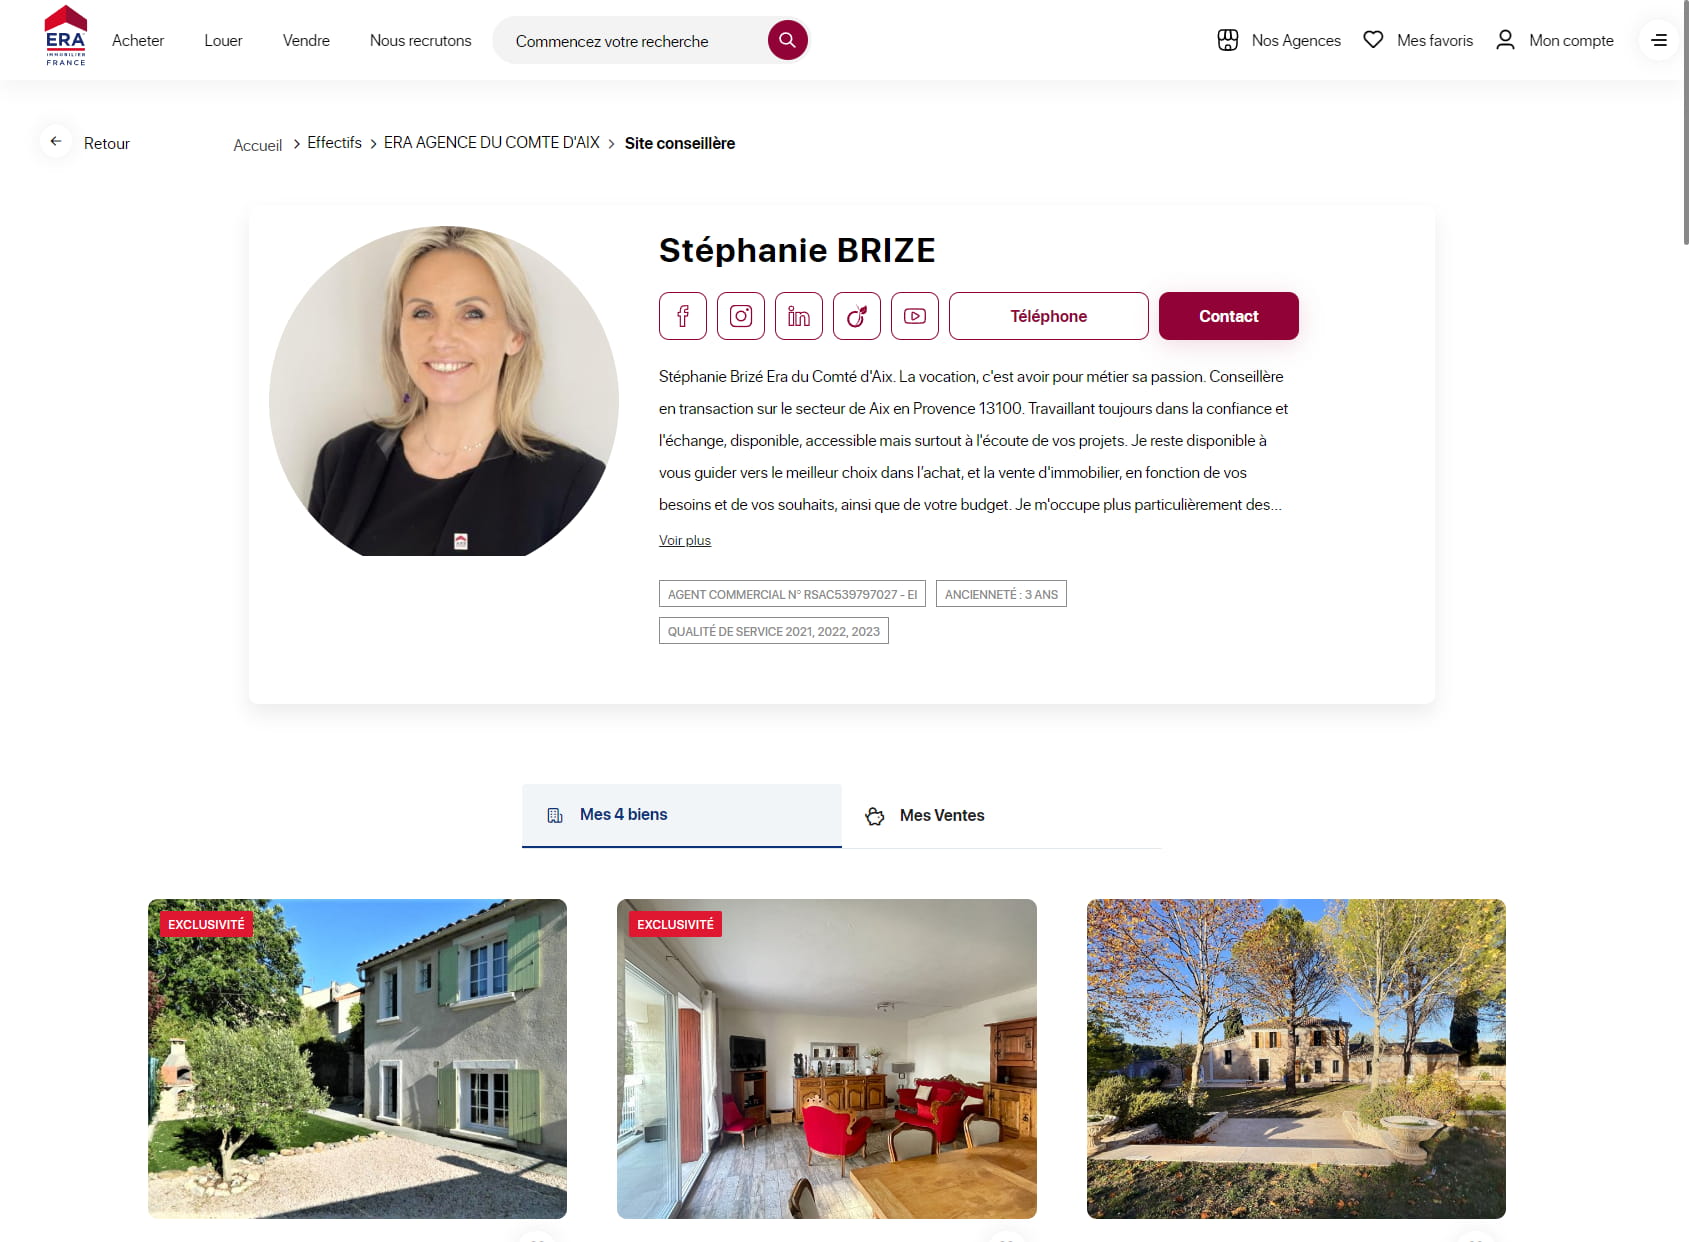 Stéphanie Brizé - conseiller immobilier Aix en Provence